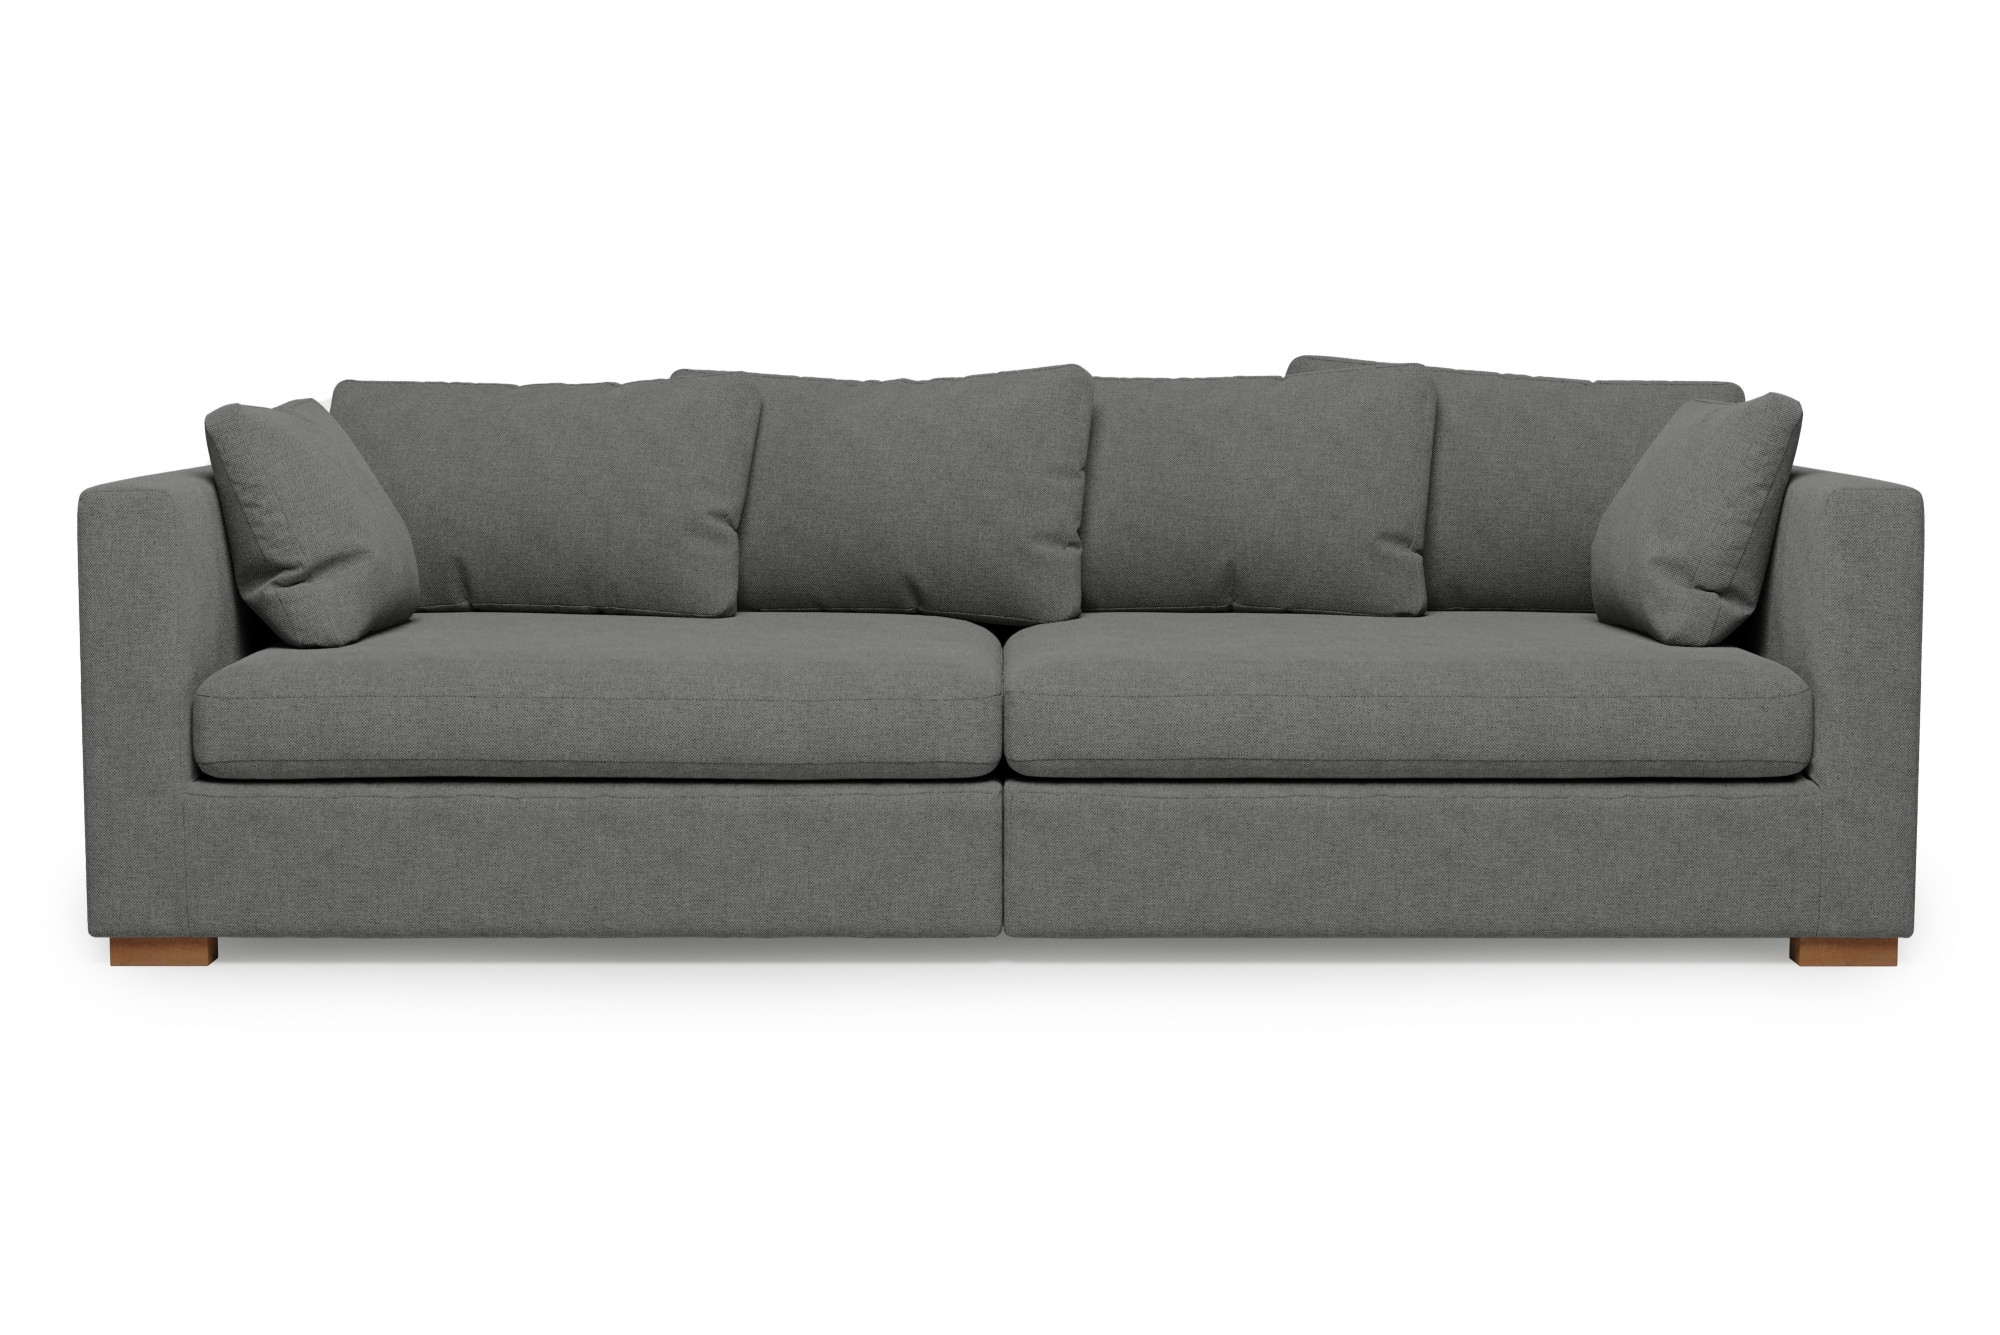 Big-Sofa »Arles«, extra tiefe Sitzfläche, in diversen Stoffqualitäten